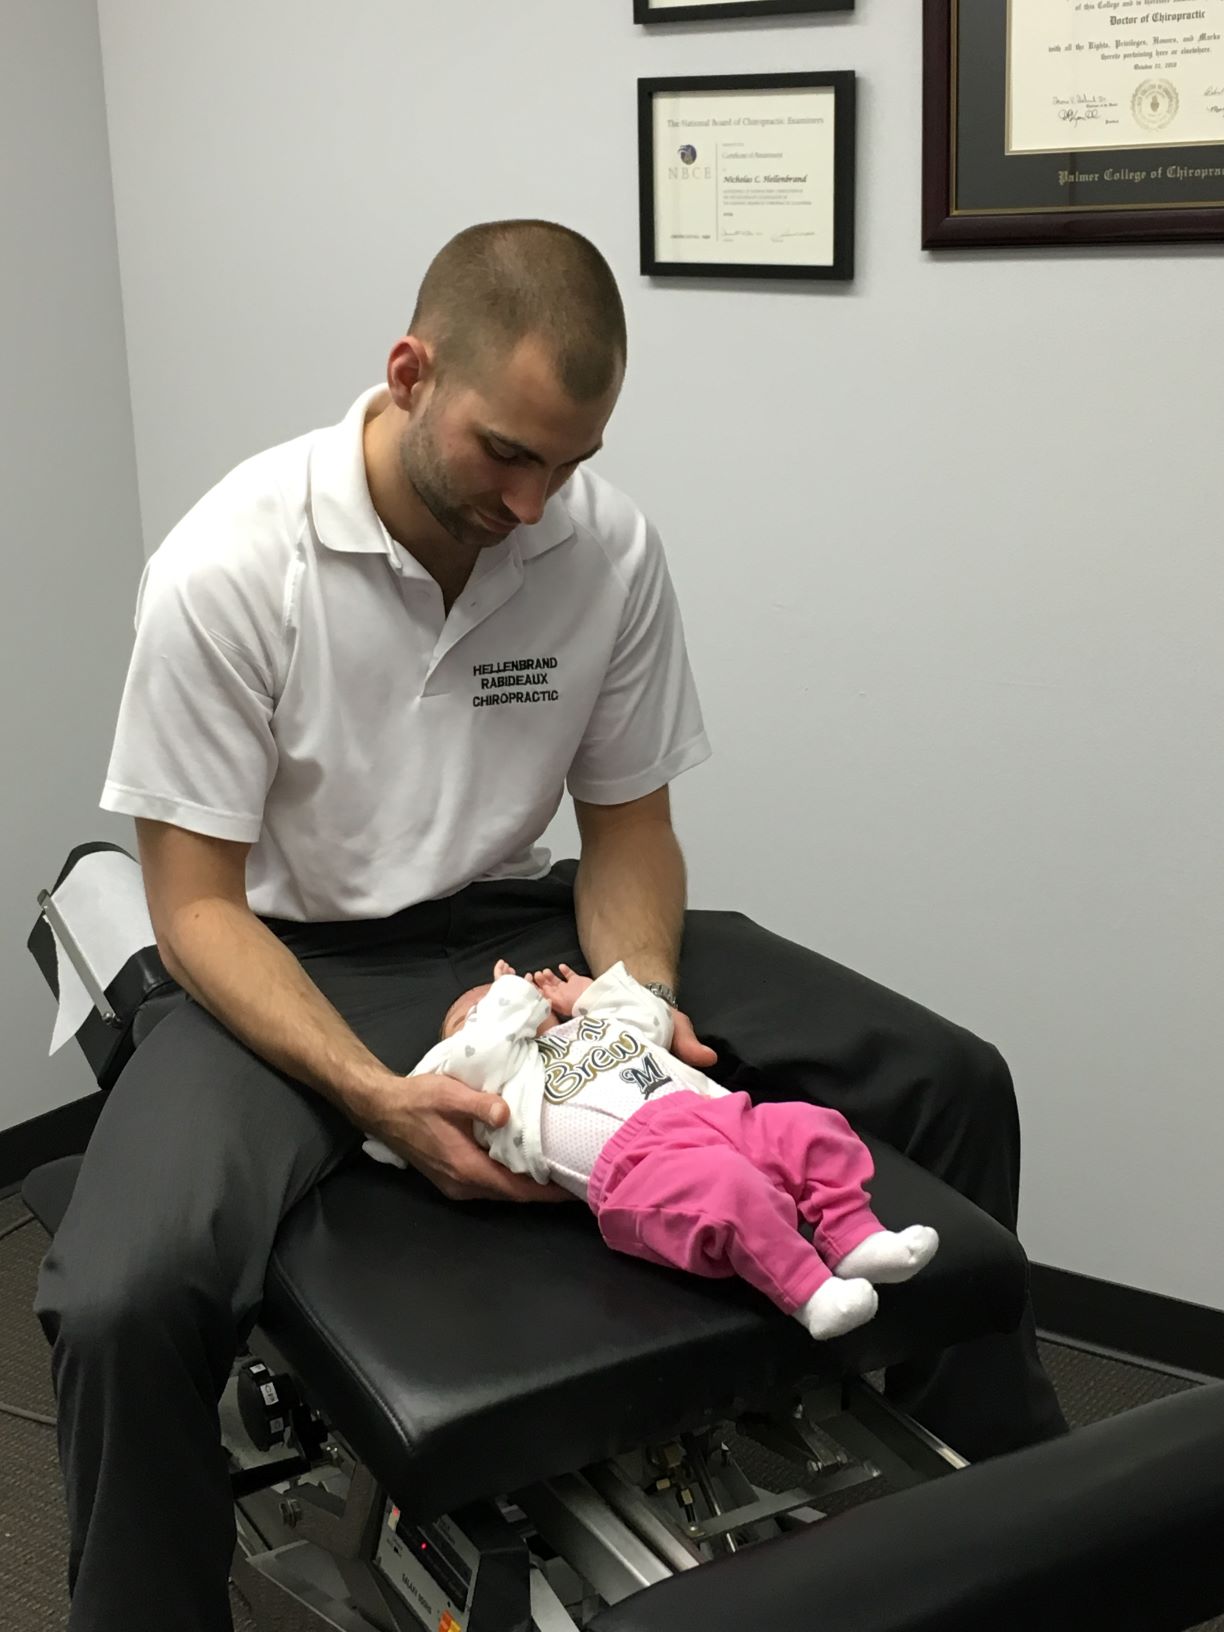 Dr Nick adjusting infant